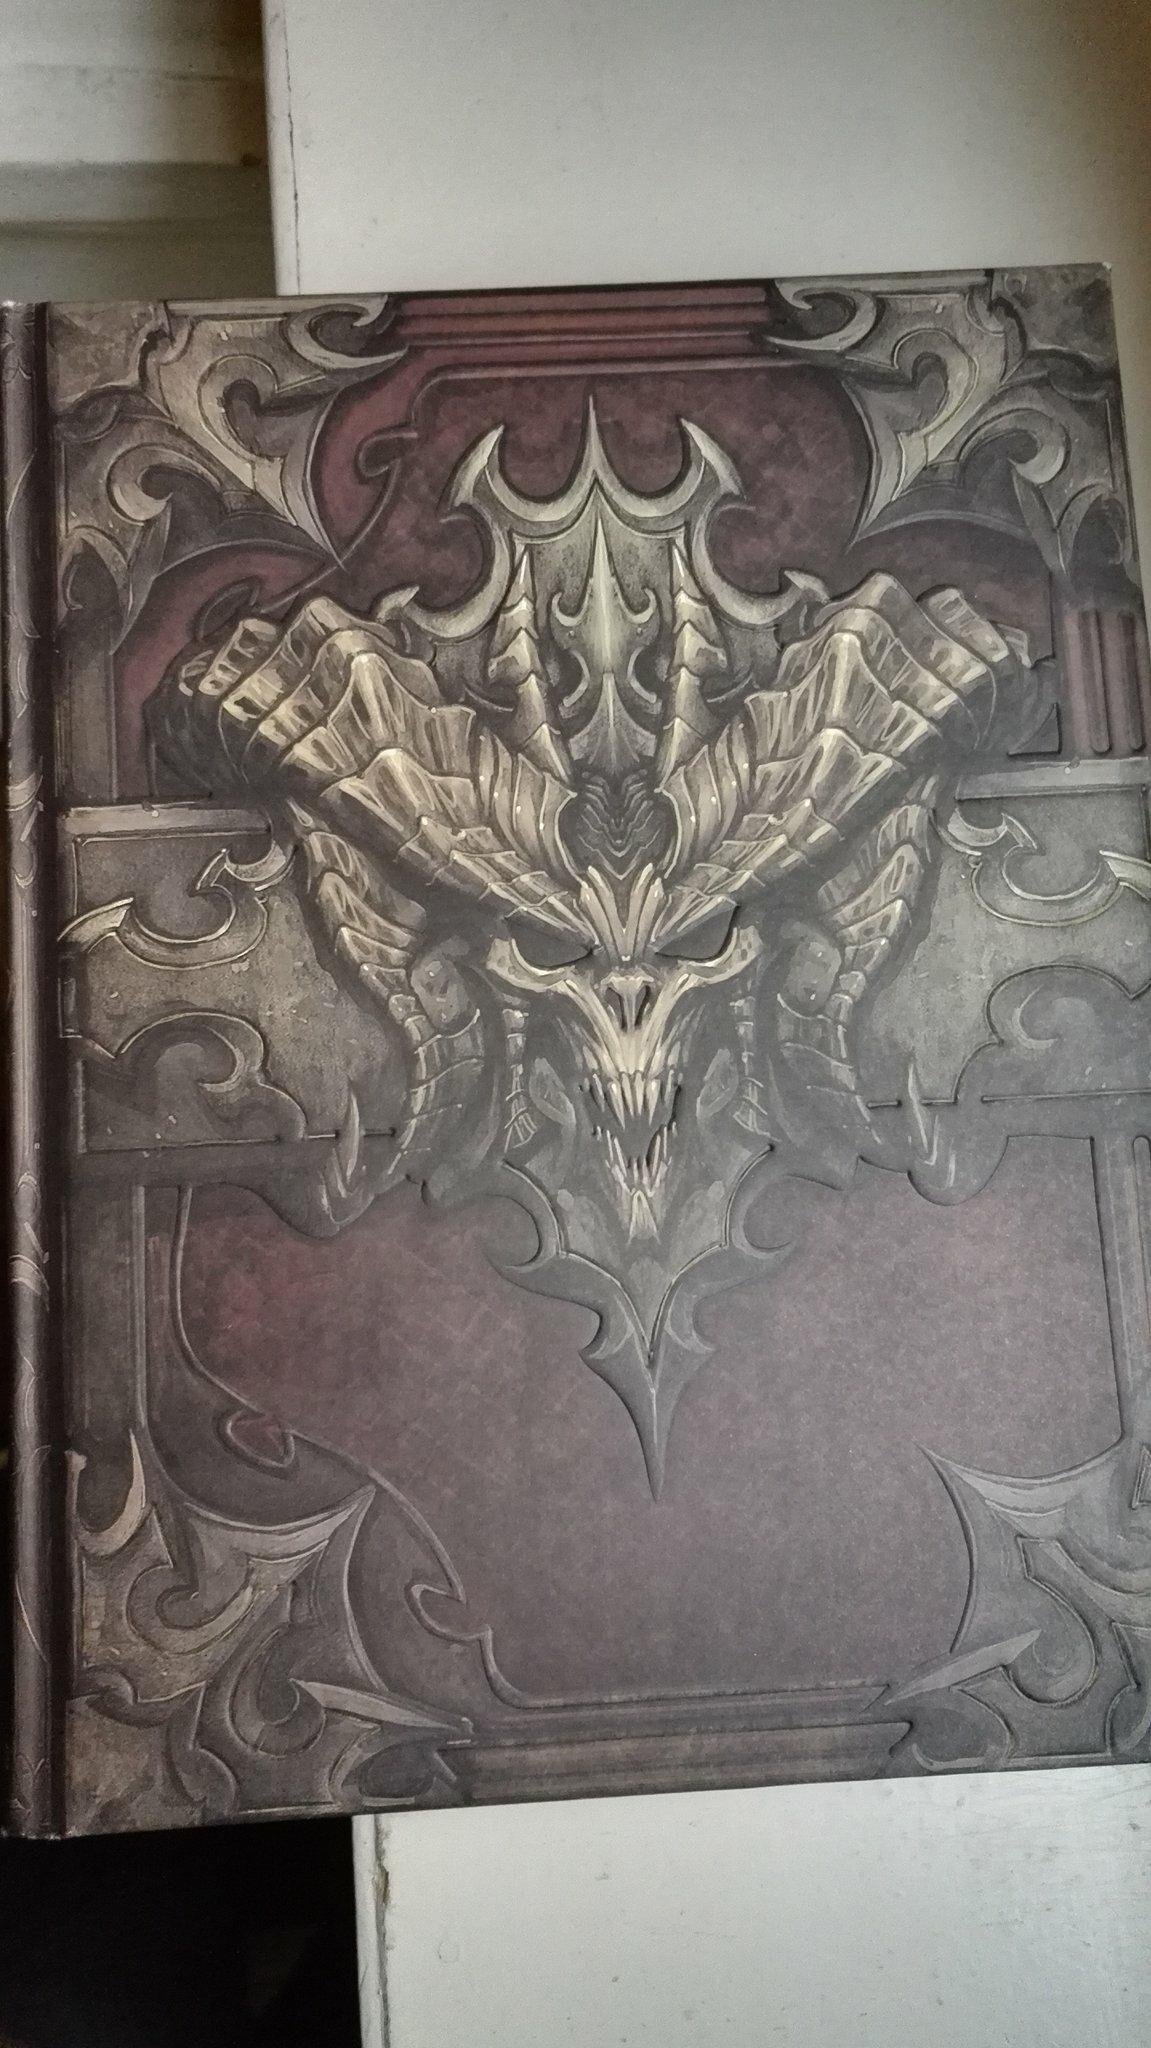 Diablo III : le livre de Caïn